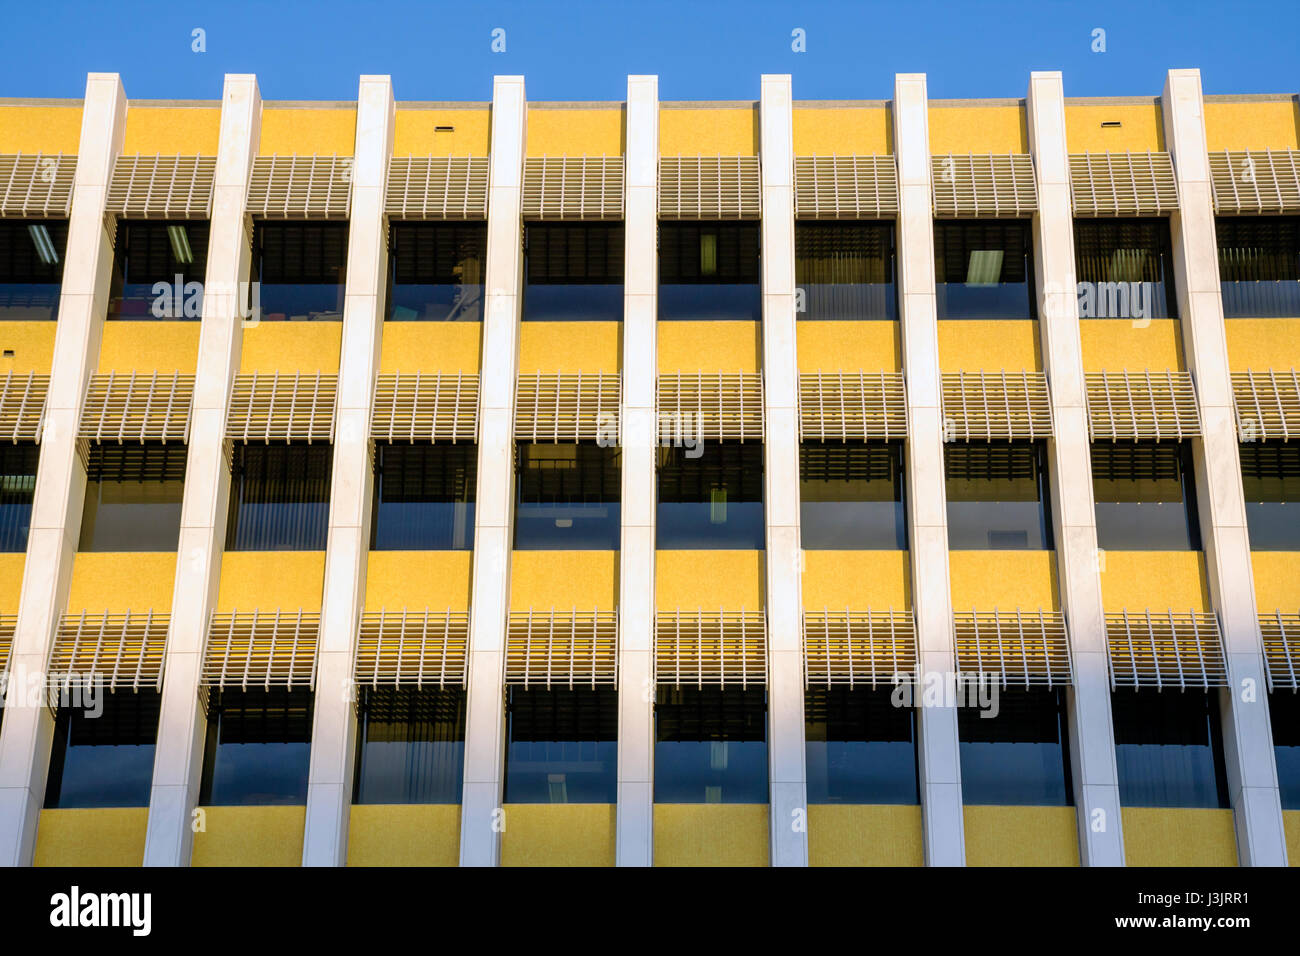 Miami Florida, Miami Herald Plaza, quotidiano, edificio, finestre, moderno, design, architettura FL081019057 Foto Stock